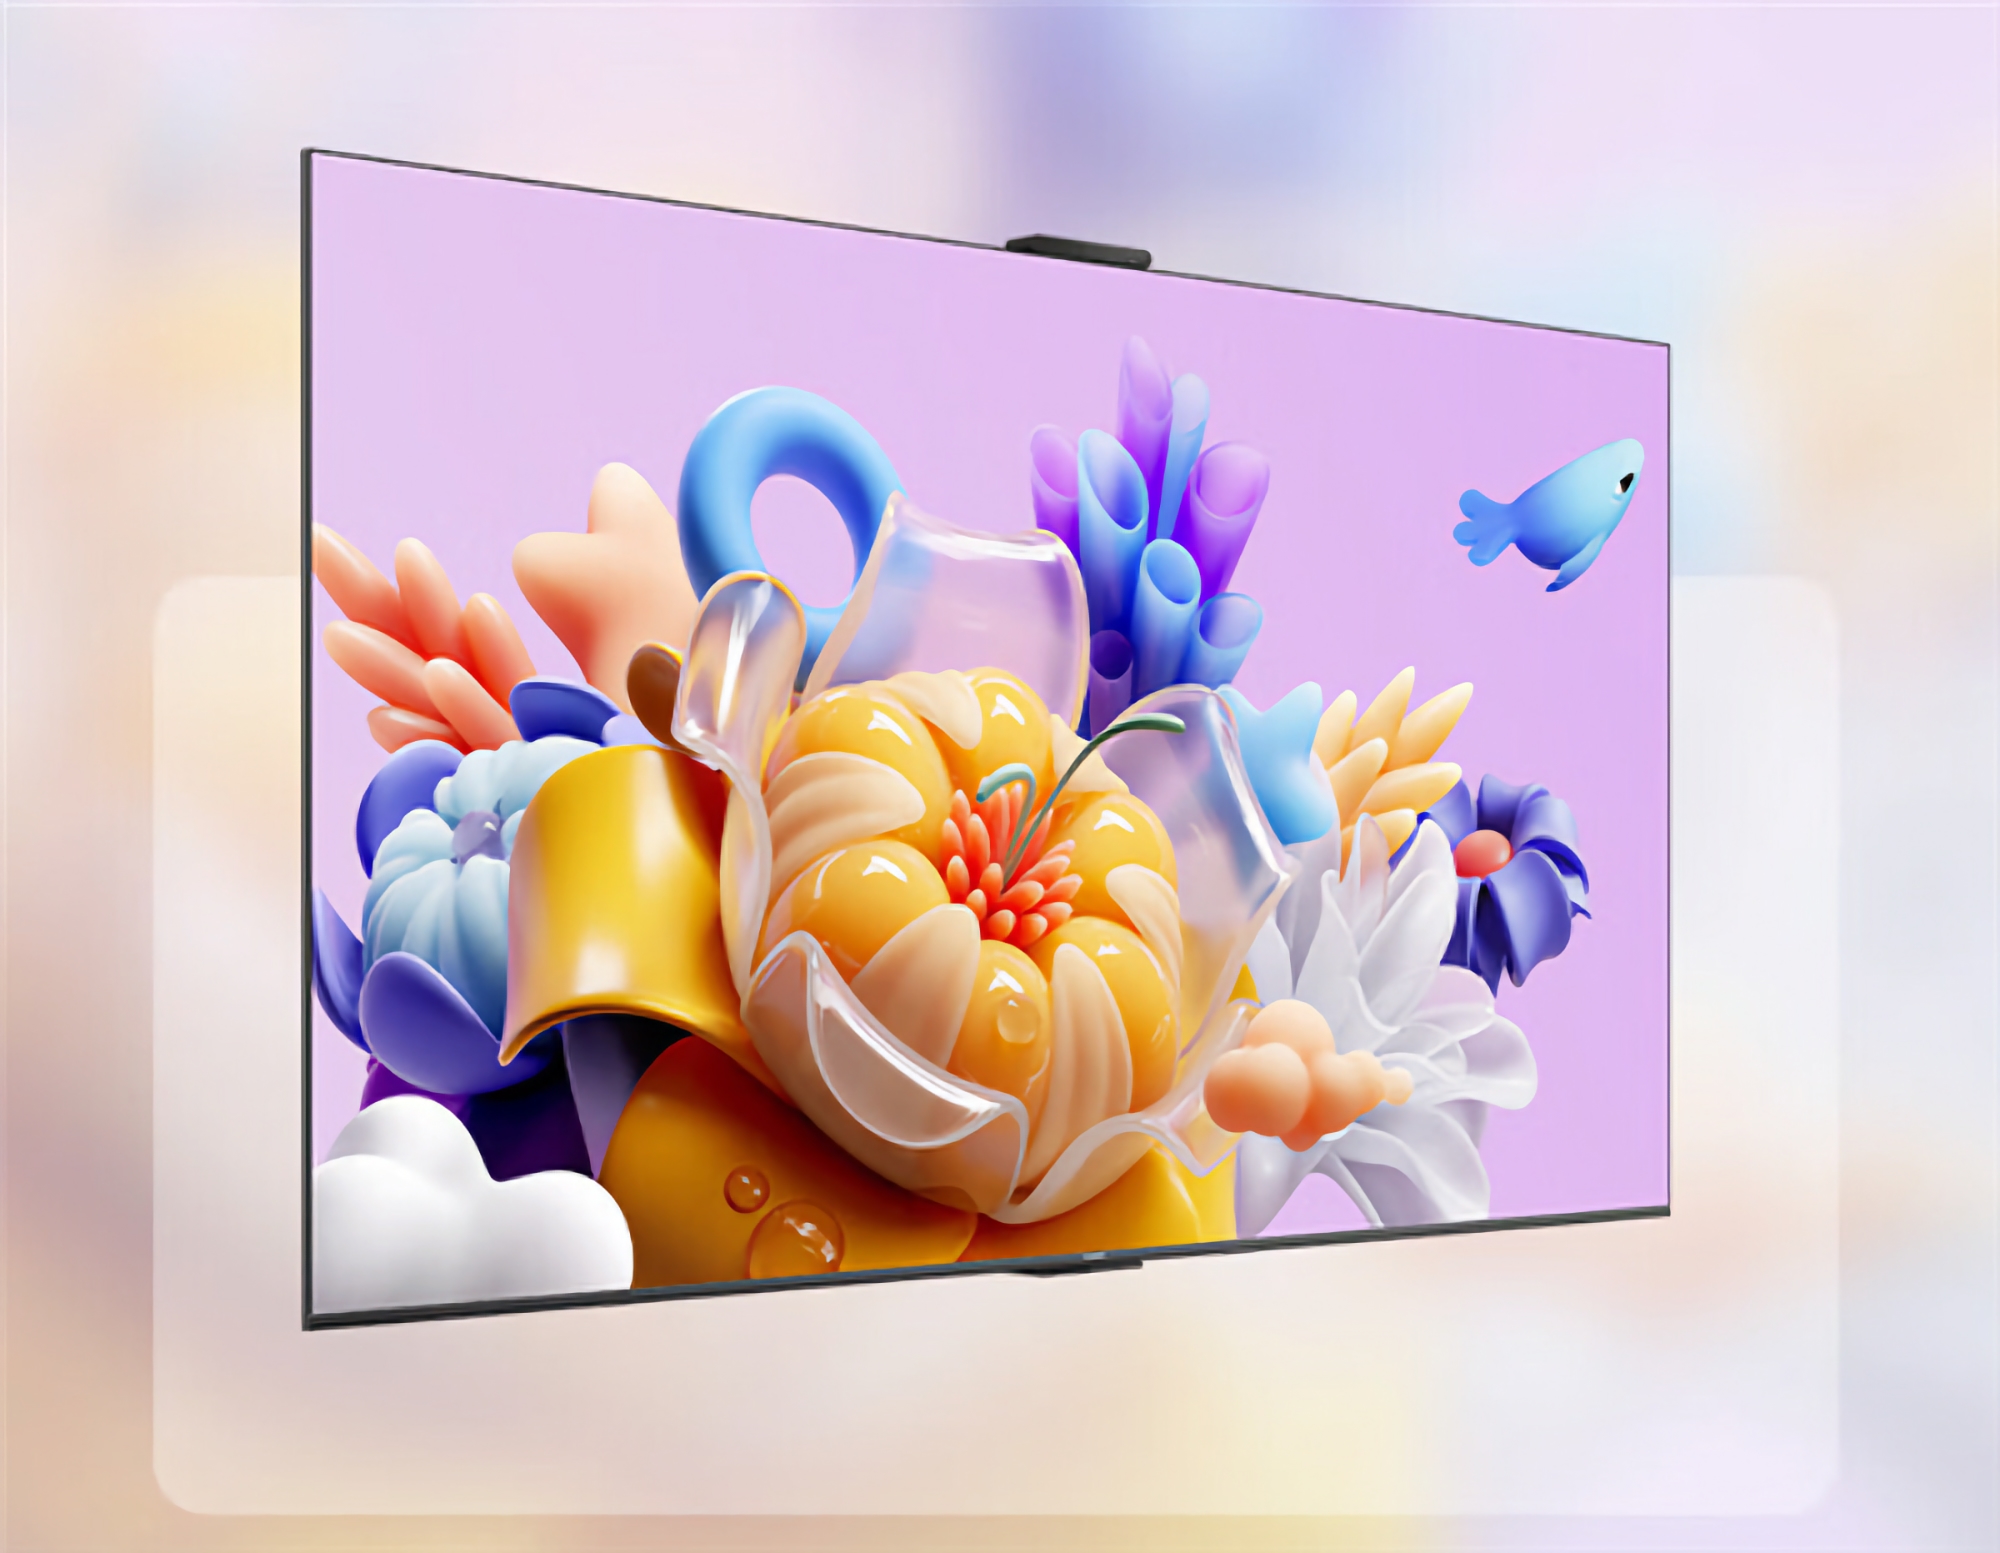 Gerücht: Huawei stellt am 14. März einen neuen Smart-TV mit 75-Zoll-Bildschirm vor